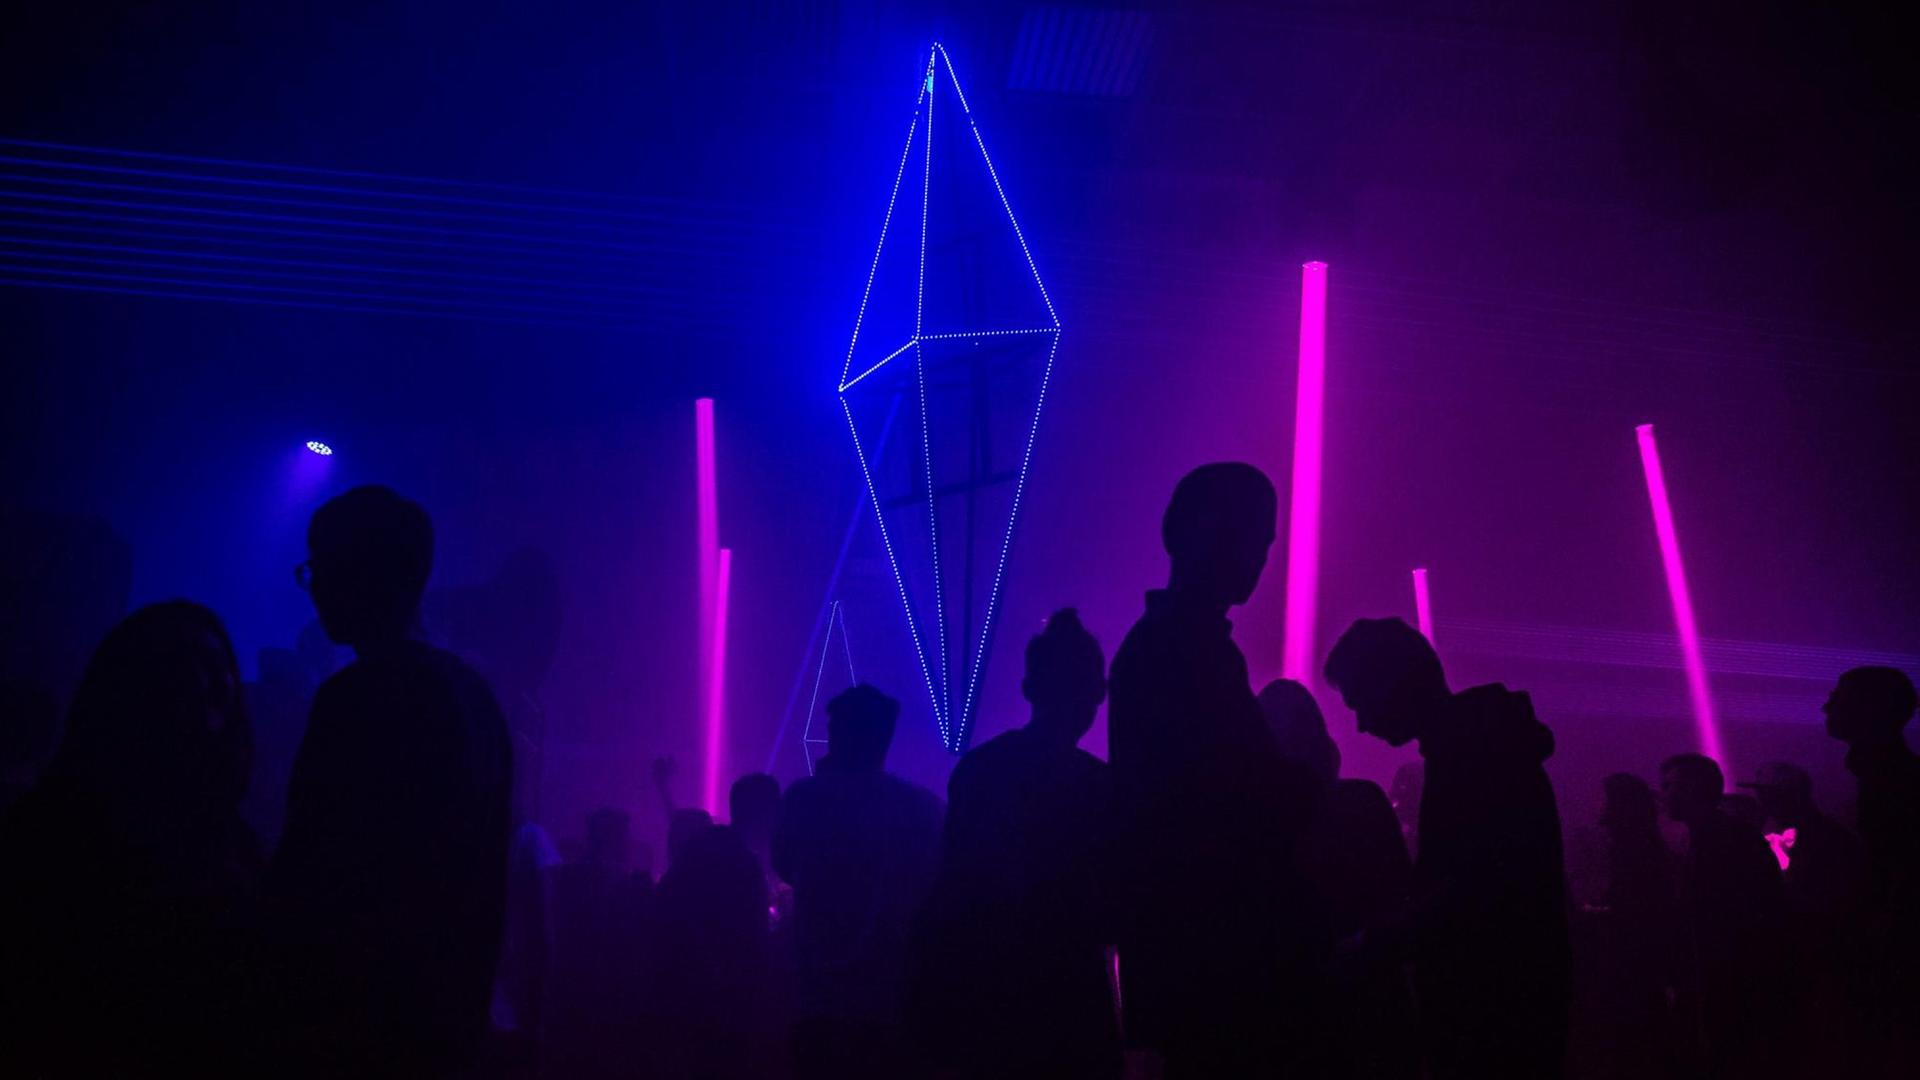 Silhouetten von tanzenden Menschen in einem Club, vor pinkten und blauen Neonröhren.